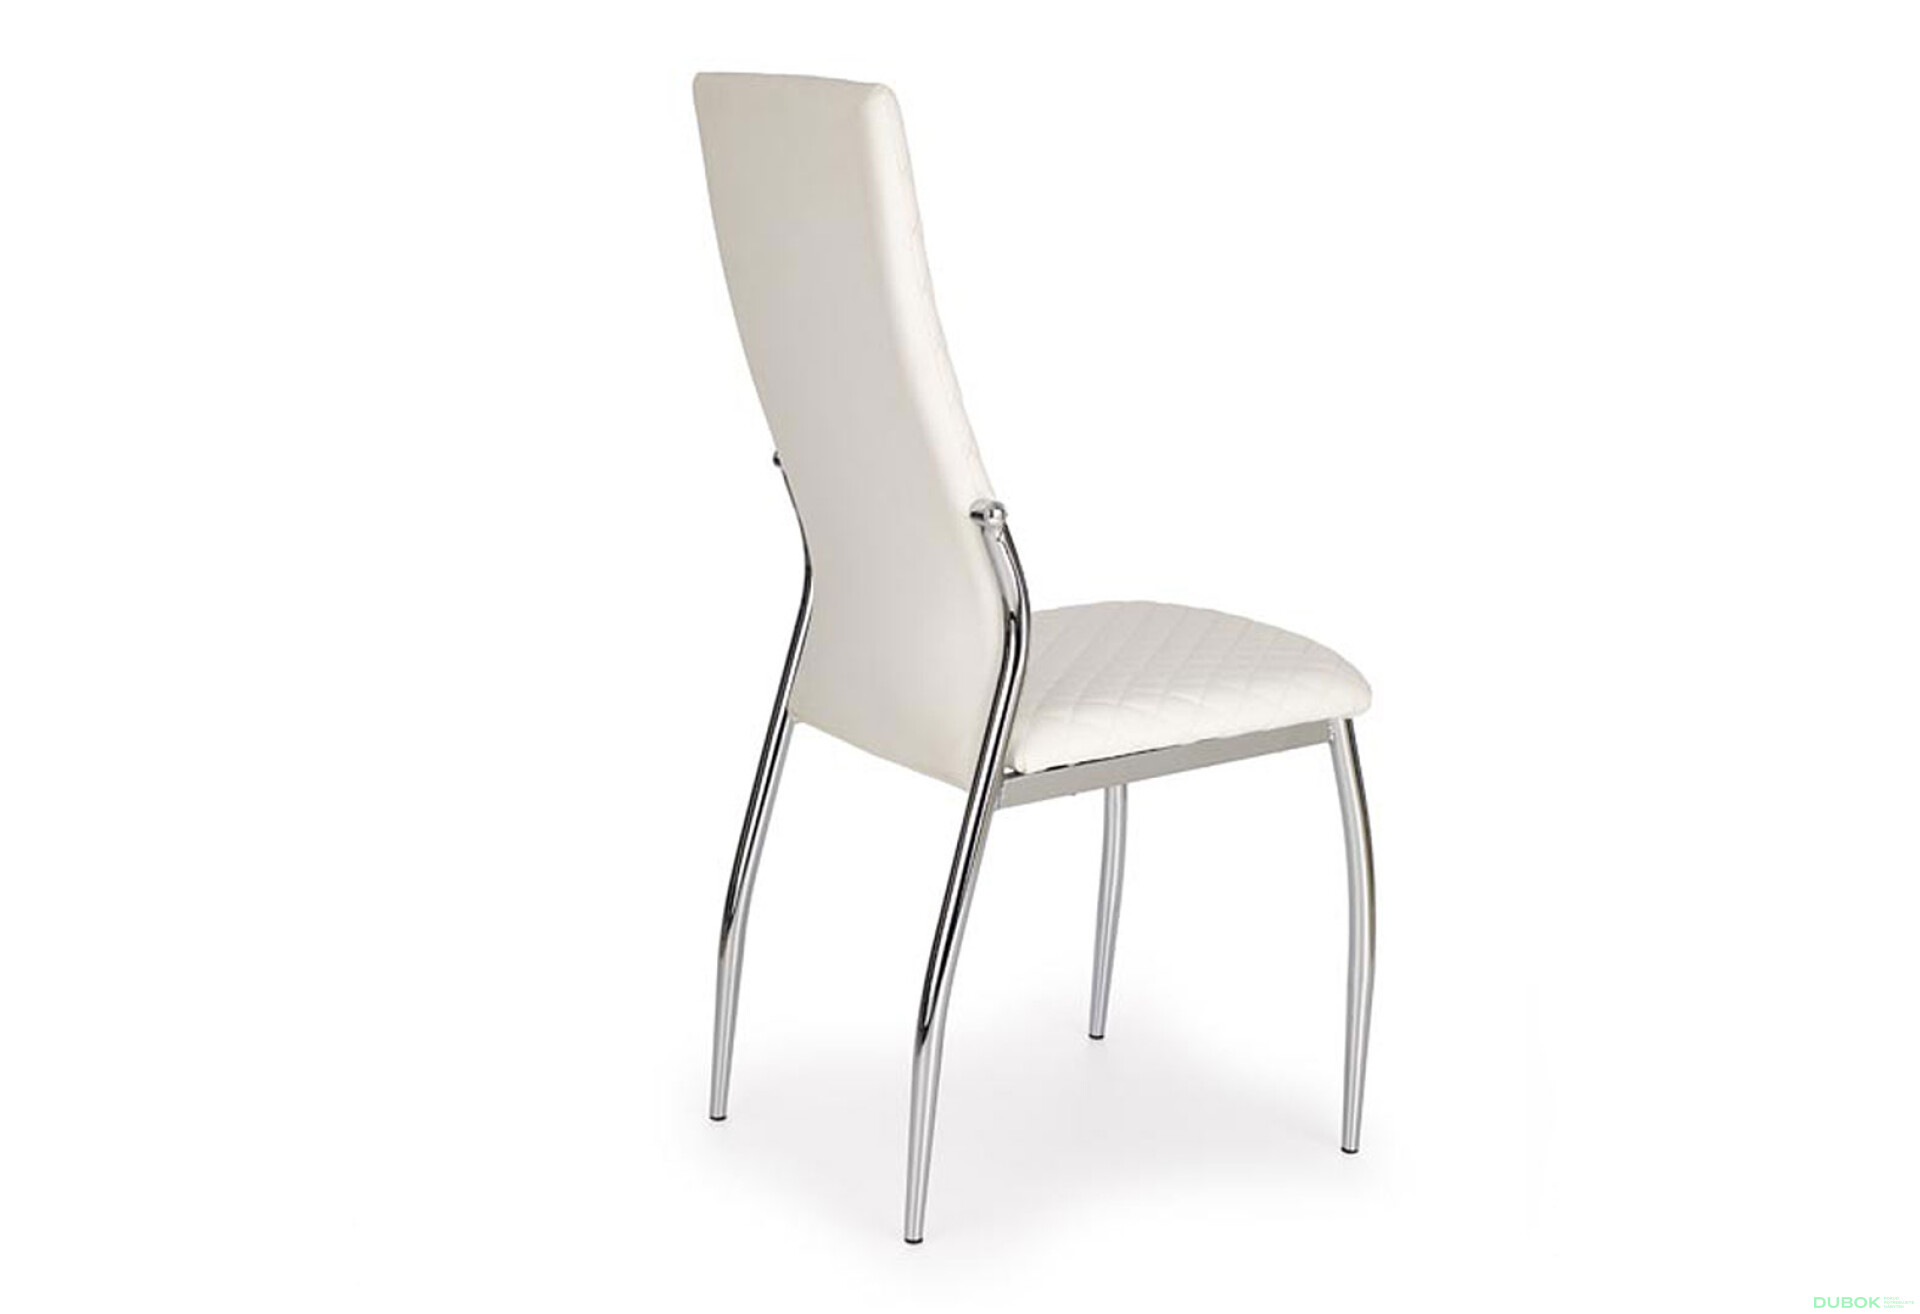 Фото 2 - Židle K238 chrom / bílá ekokůže